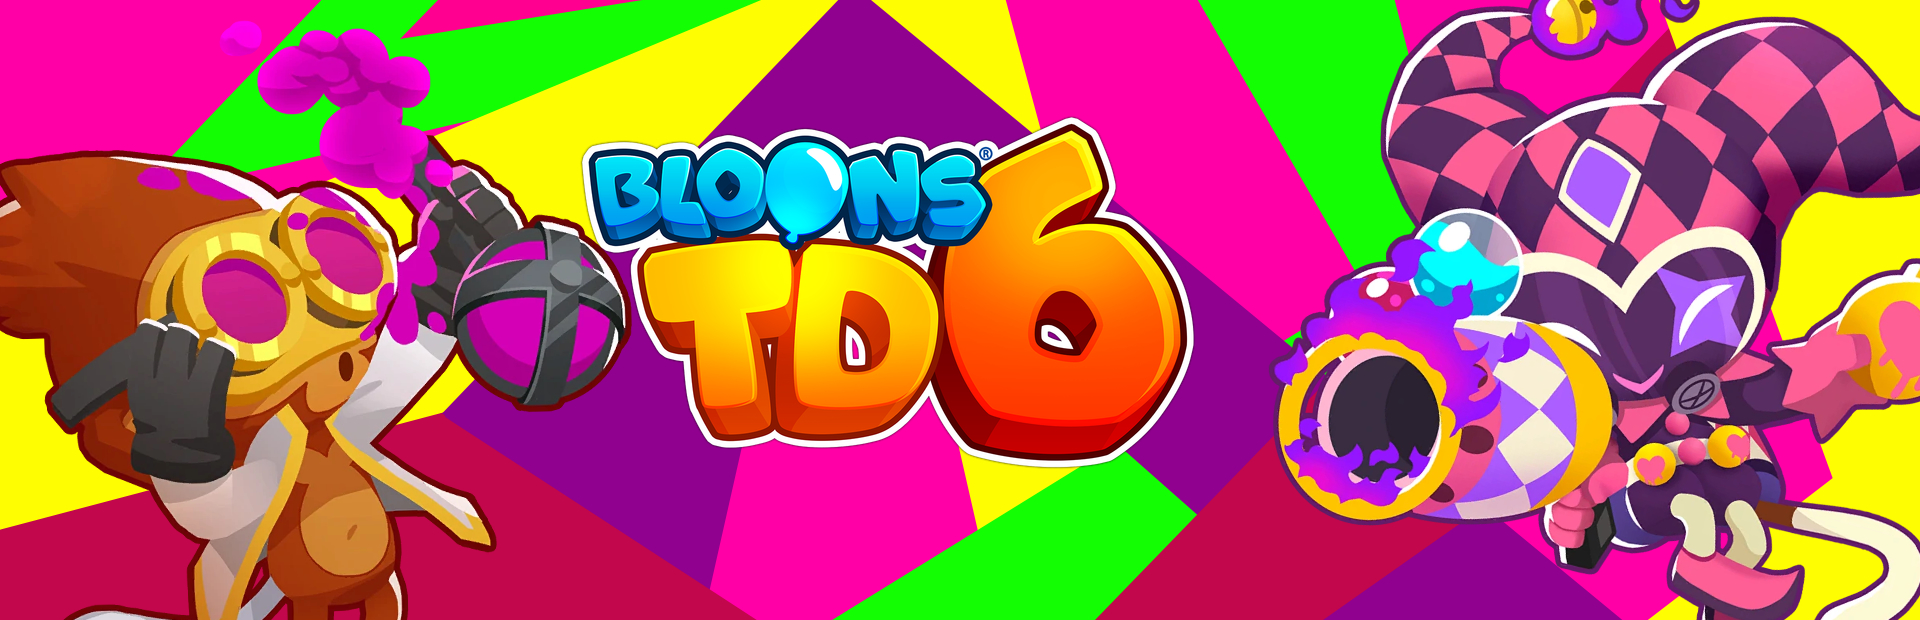 دانلود بازی Bloons TD 6 برای PC | گیمباتو